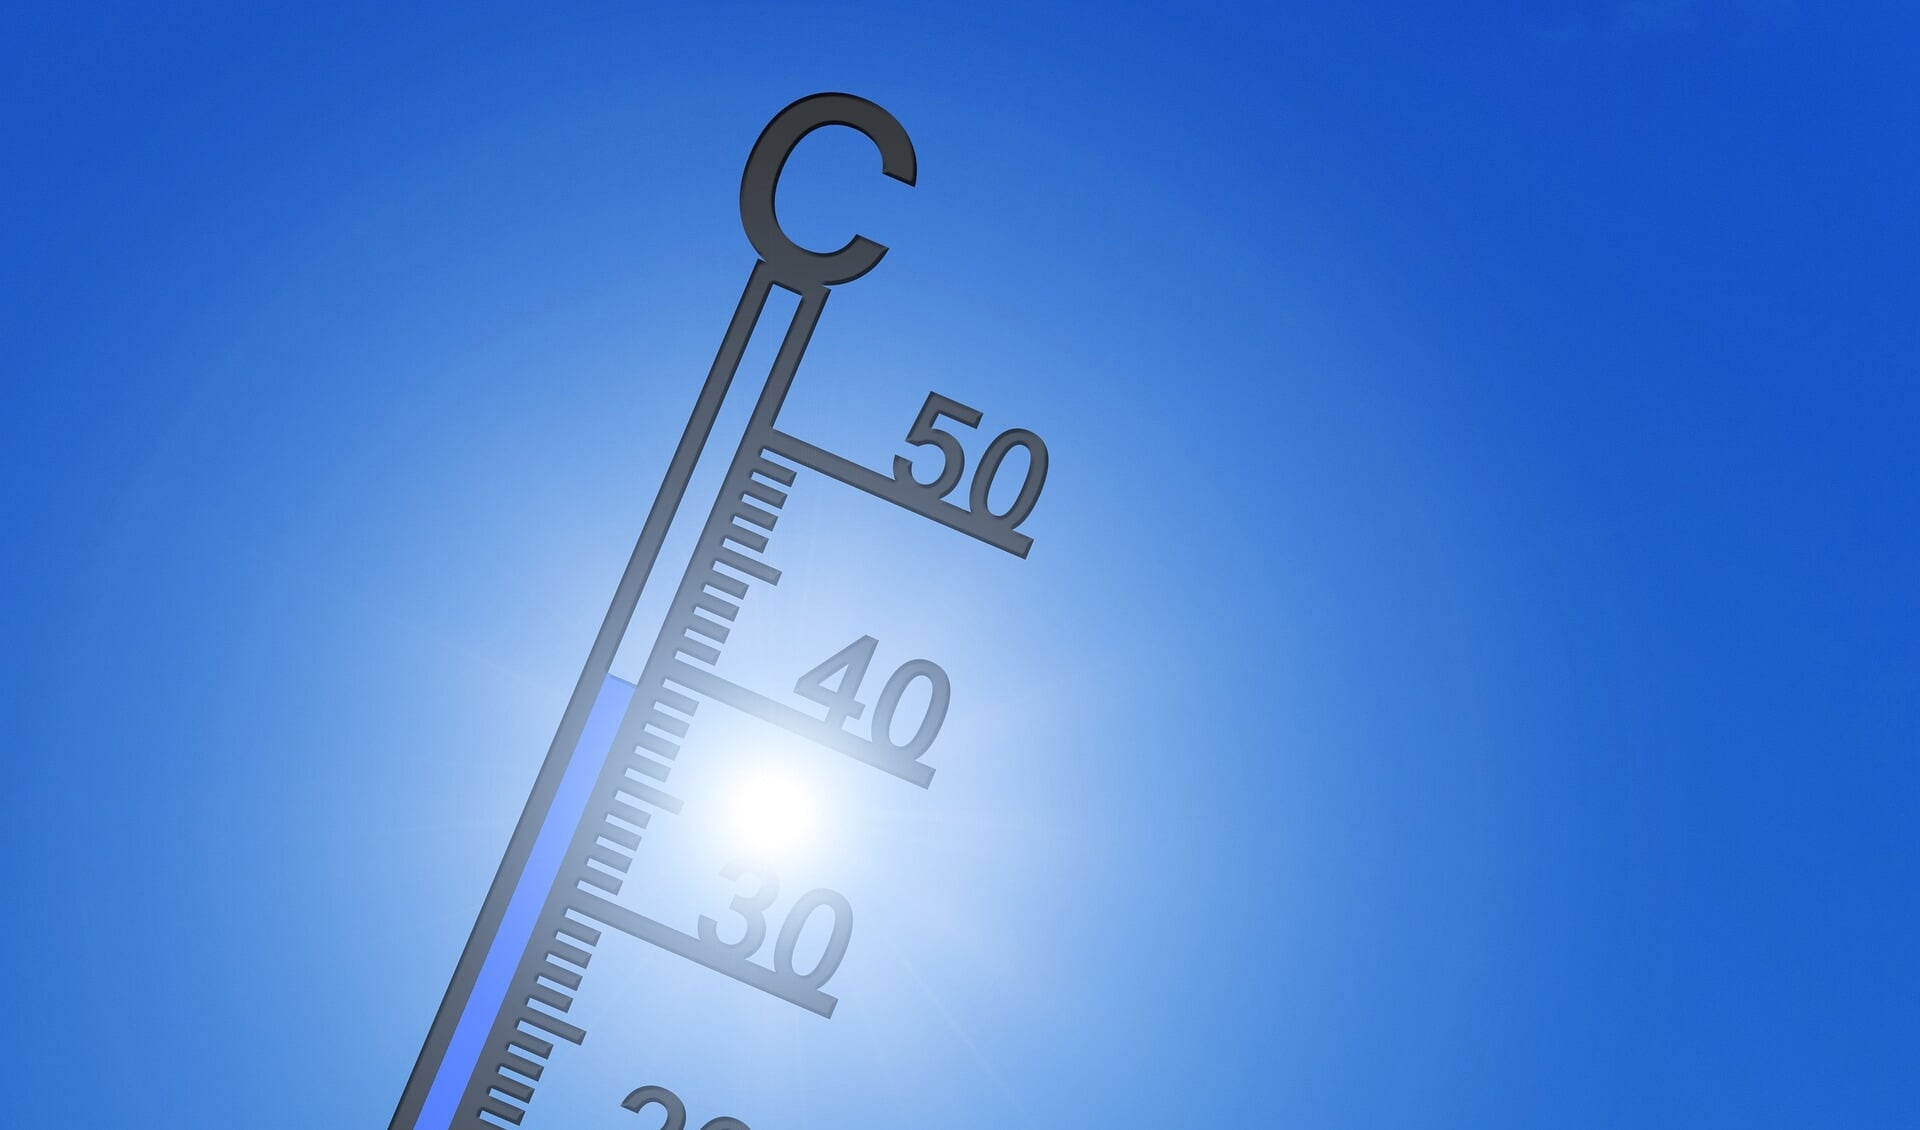 Temperaturen van boven de 30 graden, met uitschieters van rond de 35, kunnen aan de orde zijn. 